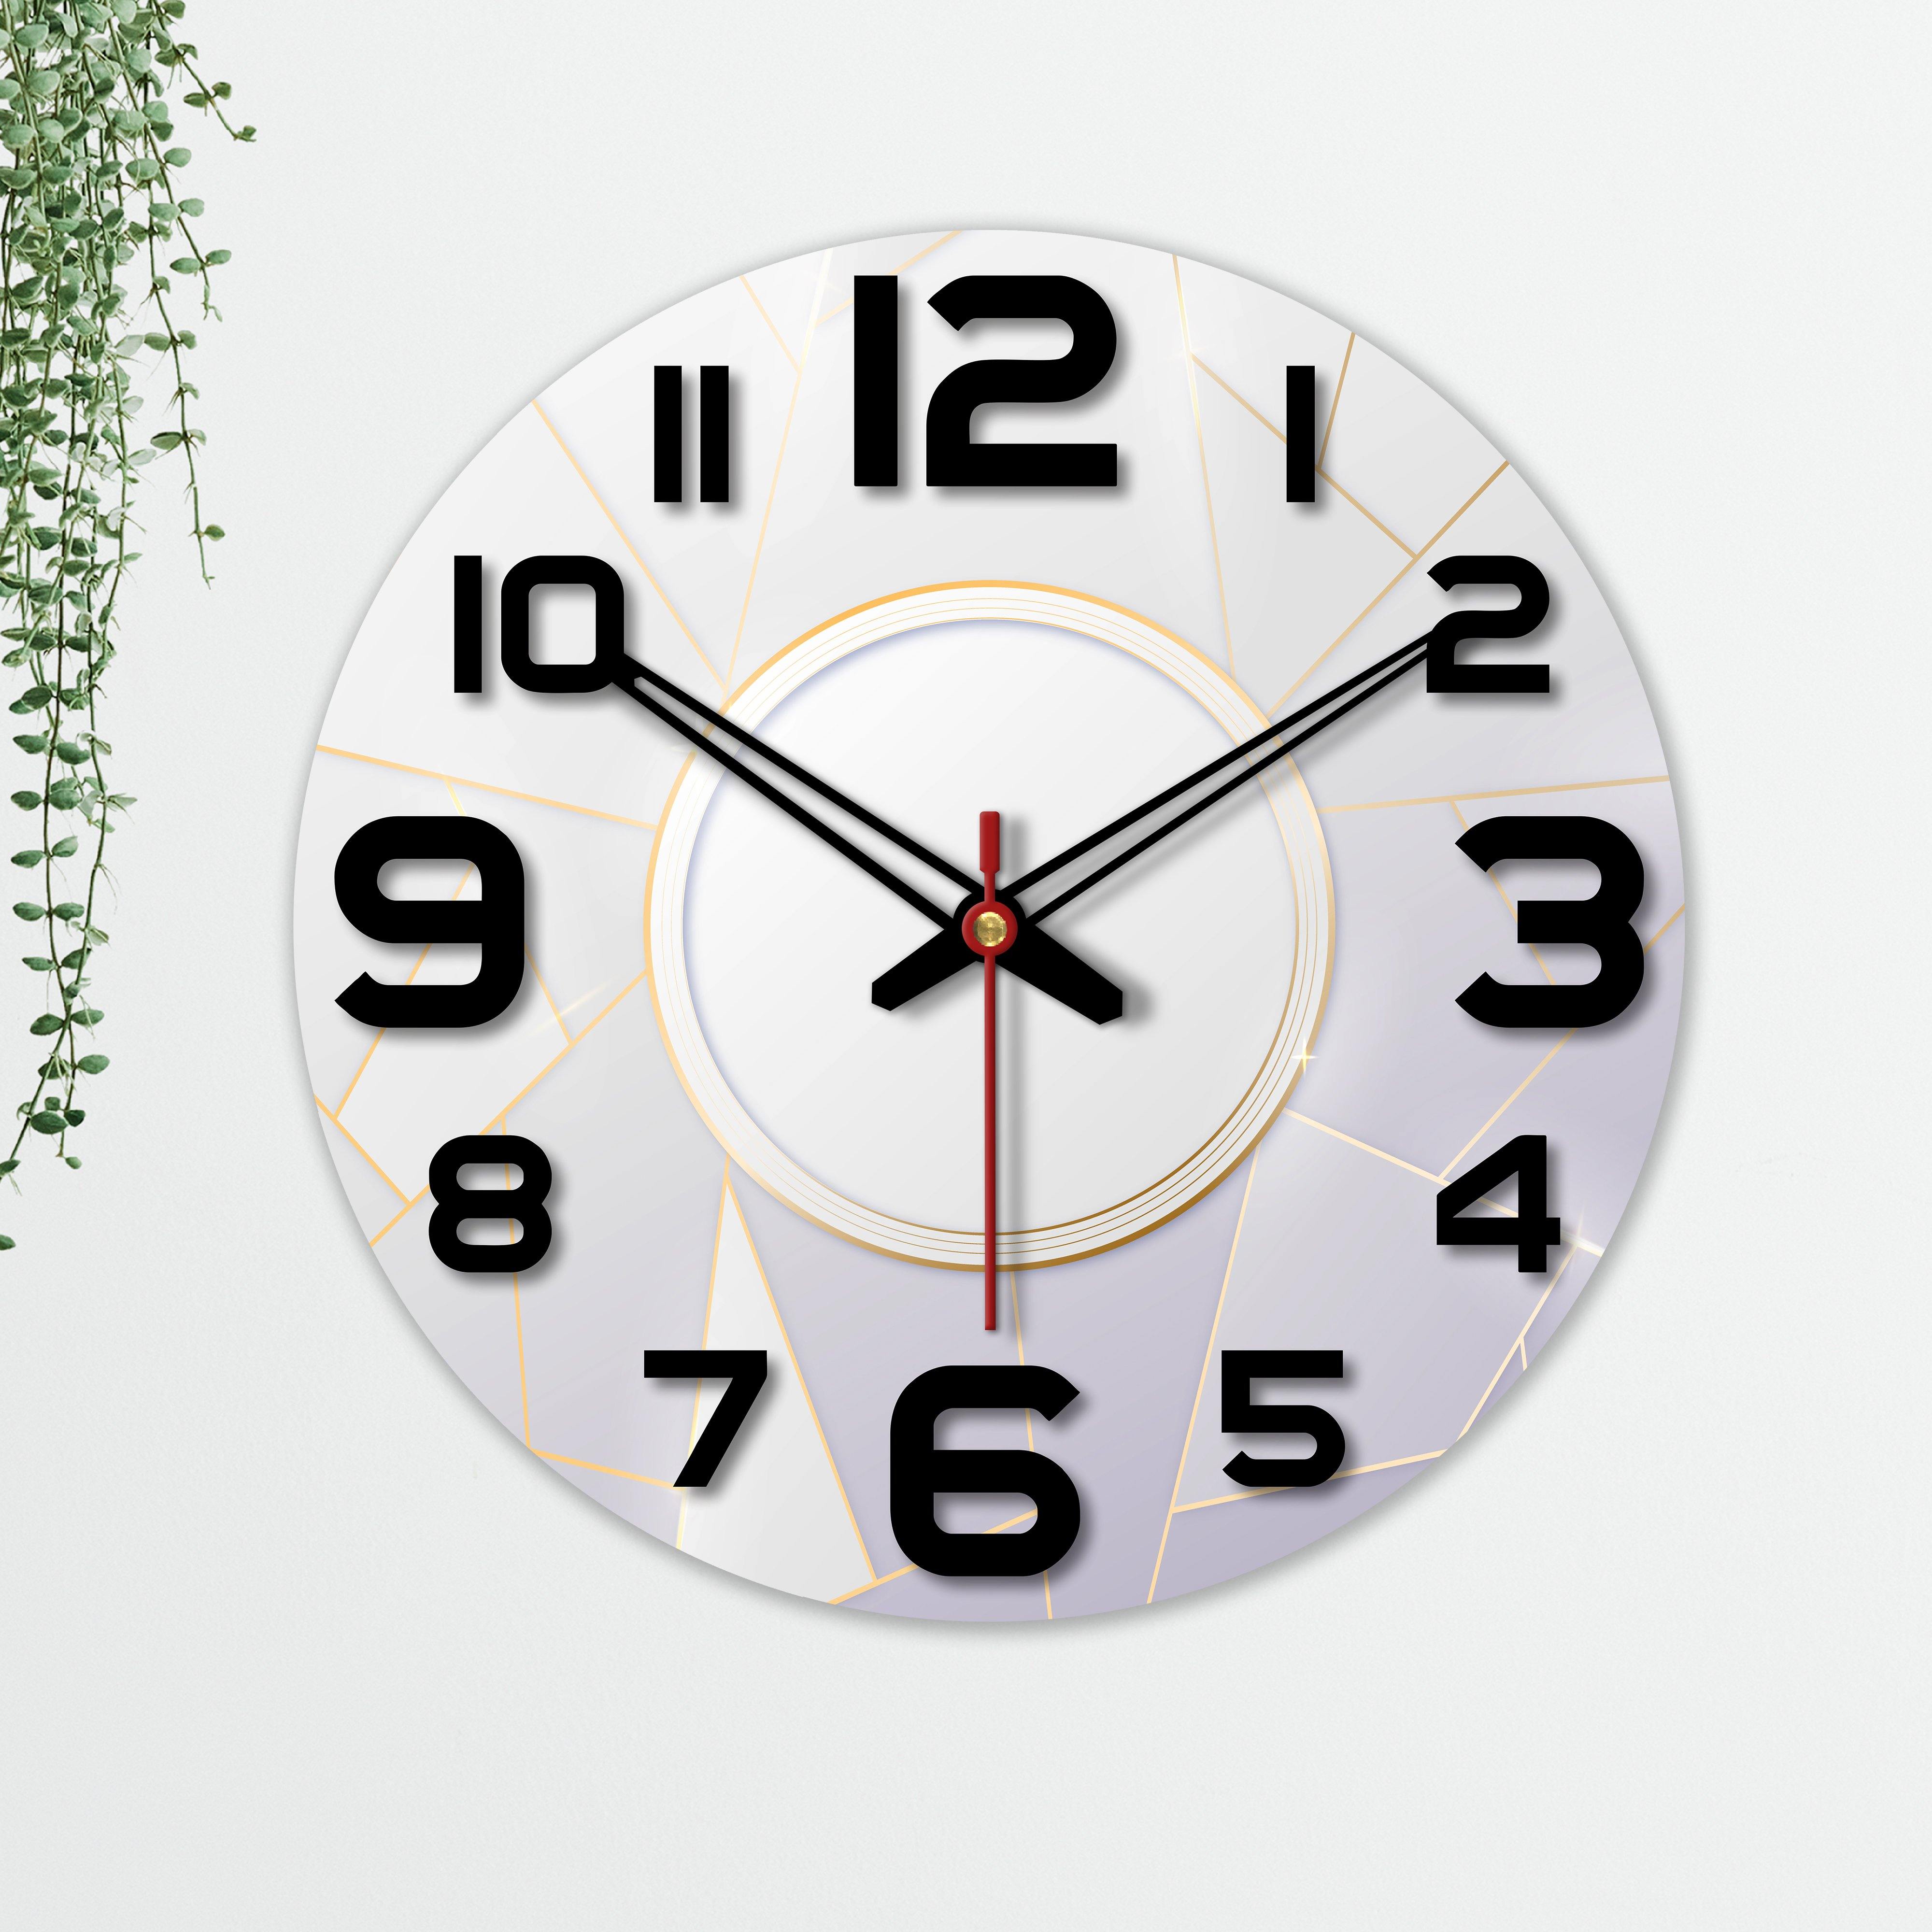 Unique Design Wooden Wall Clock